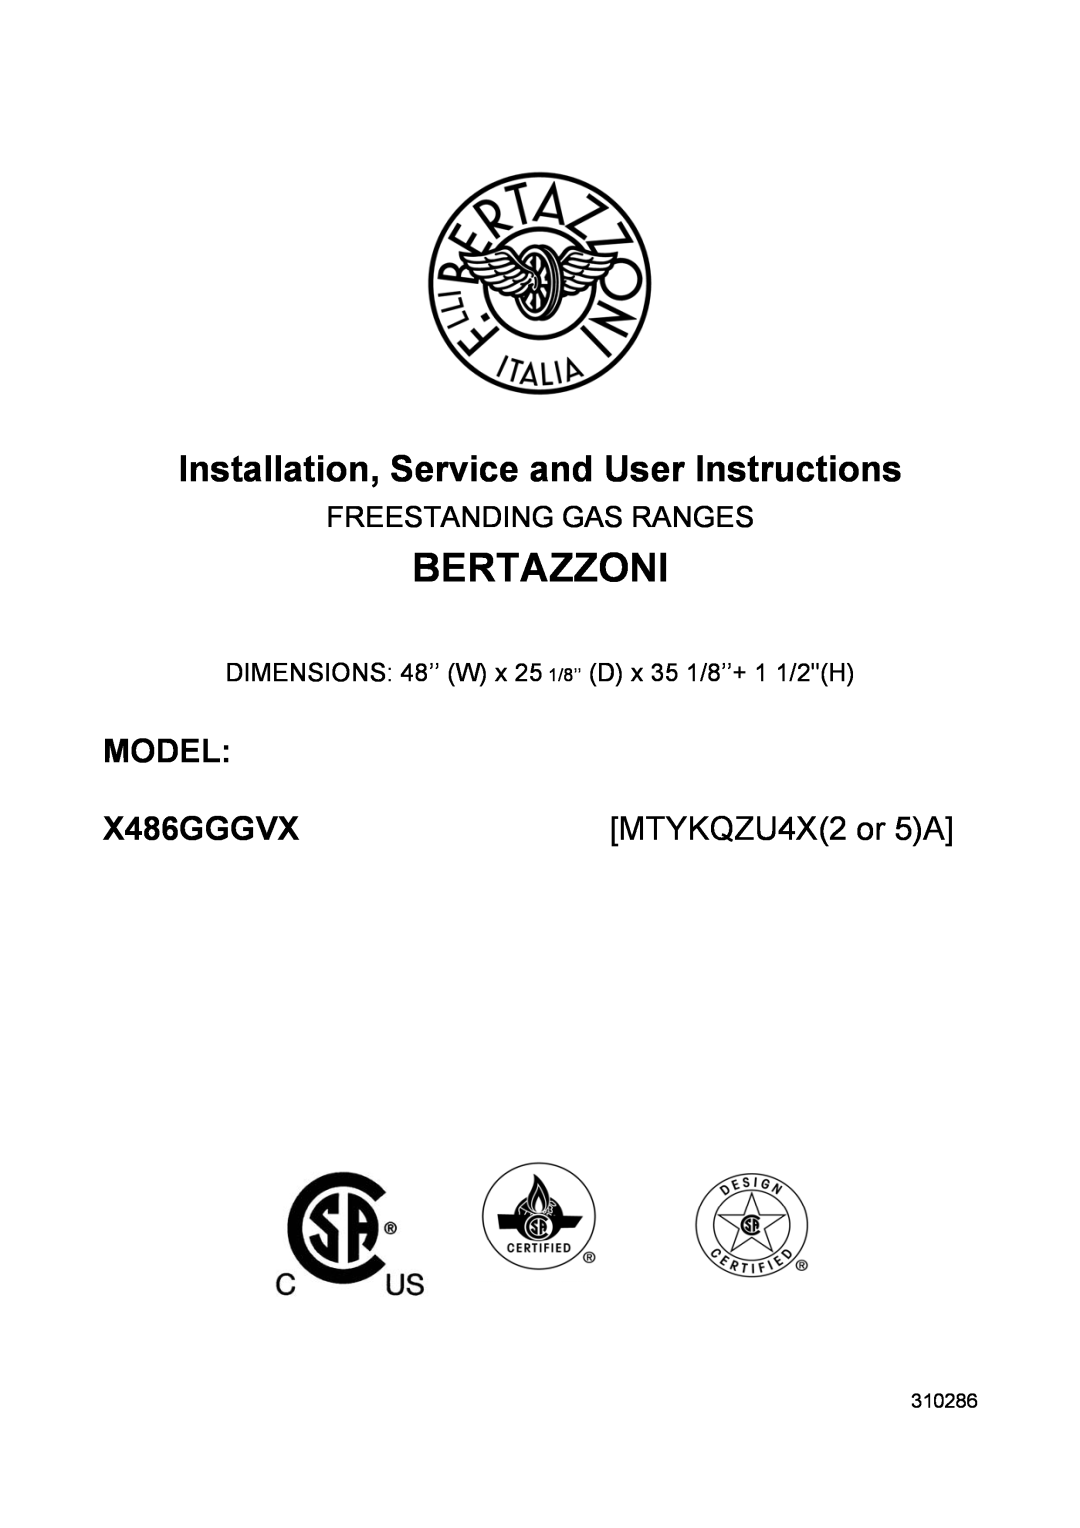 Bertazzoni X486GGGVX dimensions Model, MTYKQZU4X2 or 5A, Freestanding Gas Ranges, Bertazzoni, 310286 